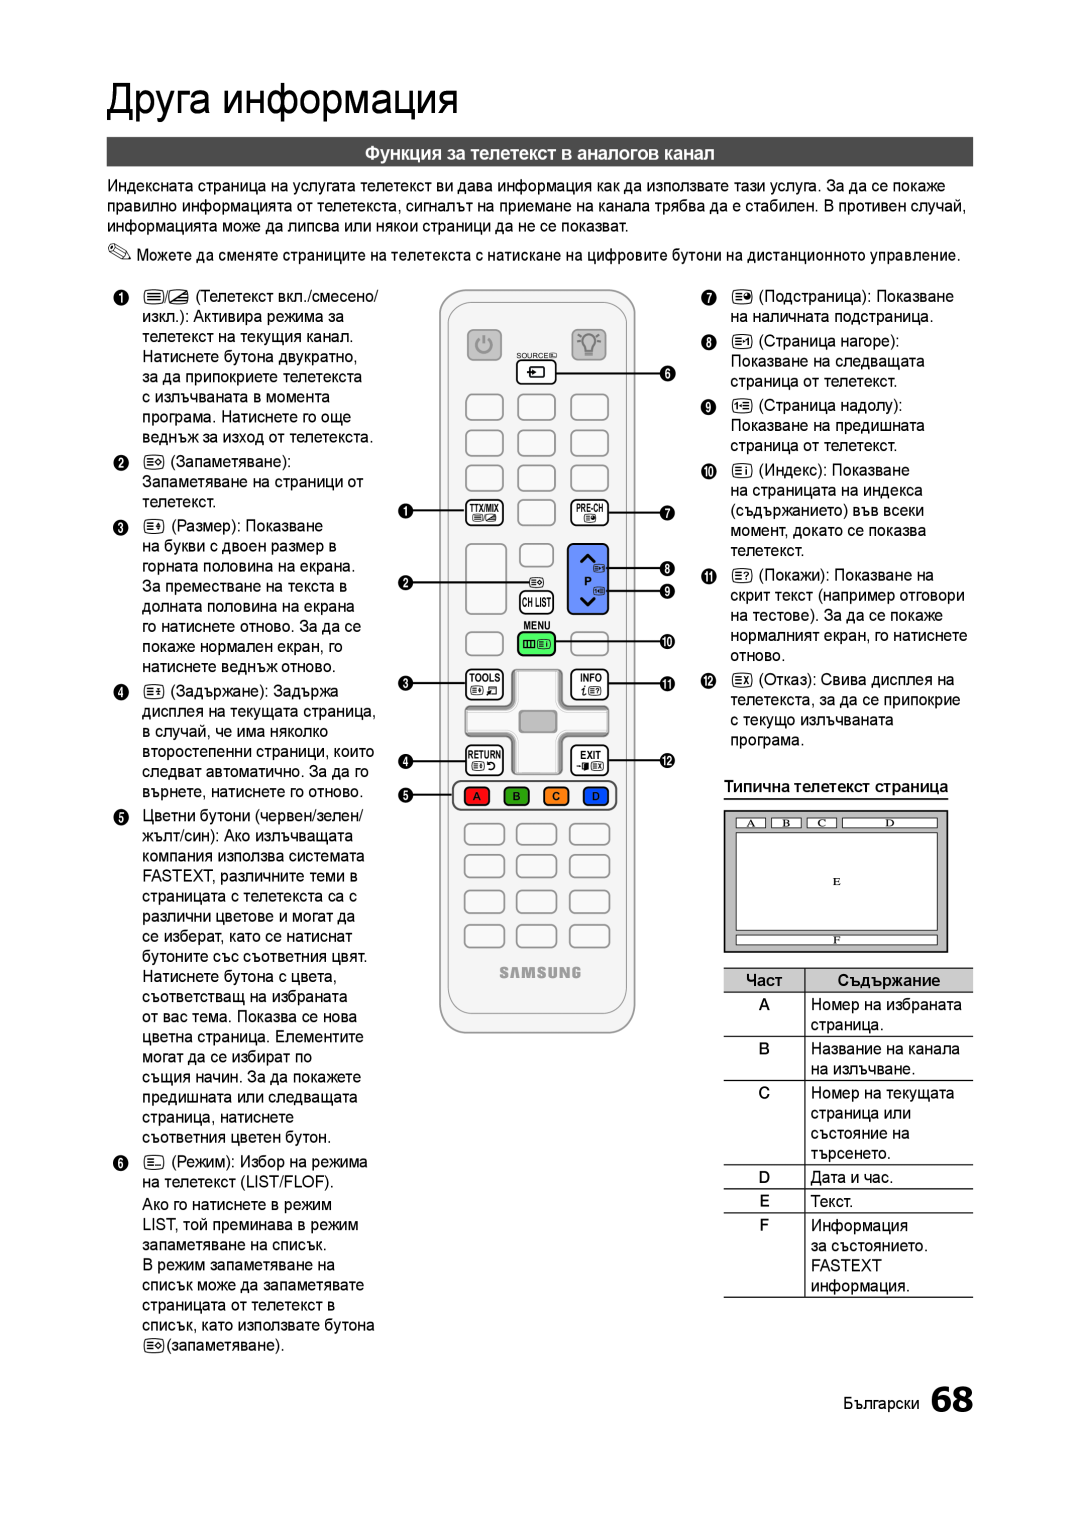 Samsung LT27A750EX/EN Друга информация, Функция за телетекст в аналогов канал, Типична телетекст страница, Съдържание 